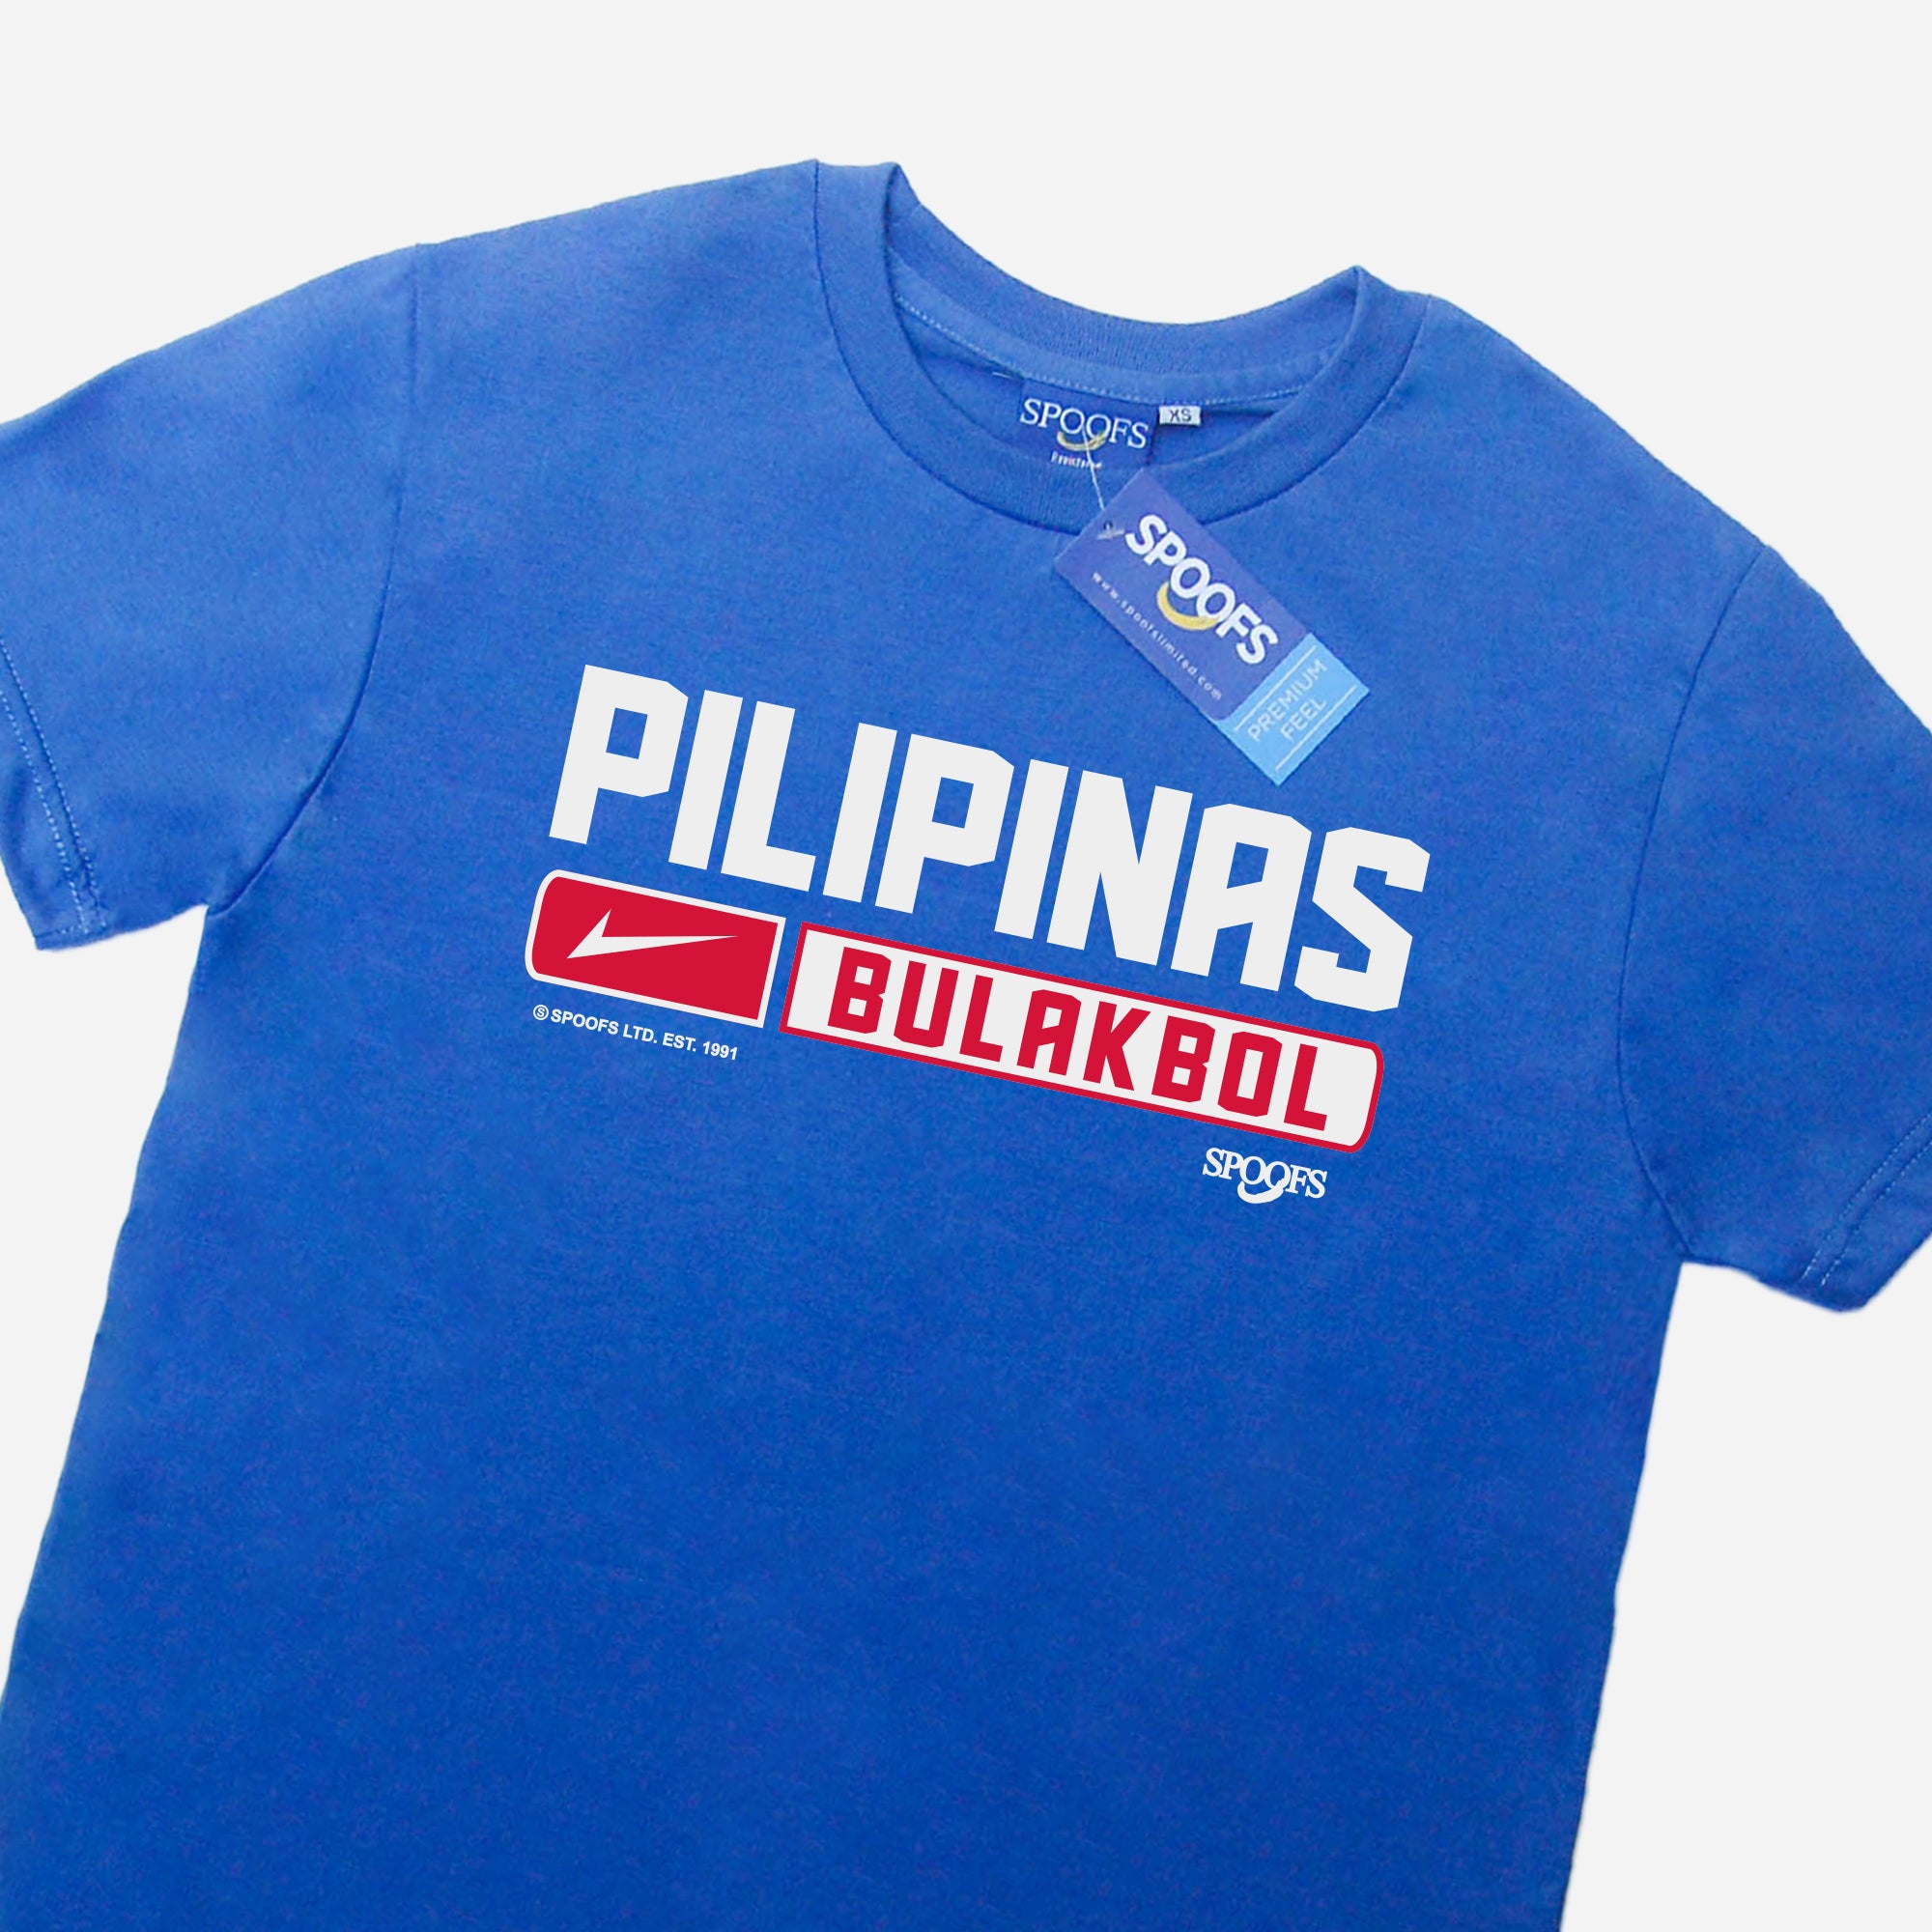 Pilipinas Bulakbol (Sky Blue)